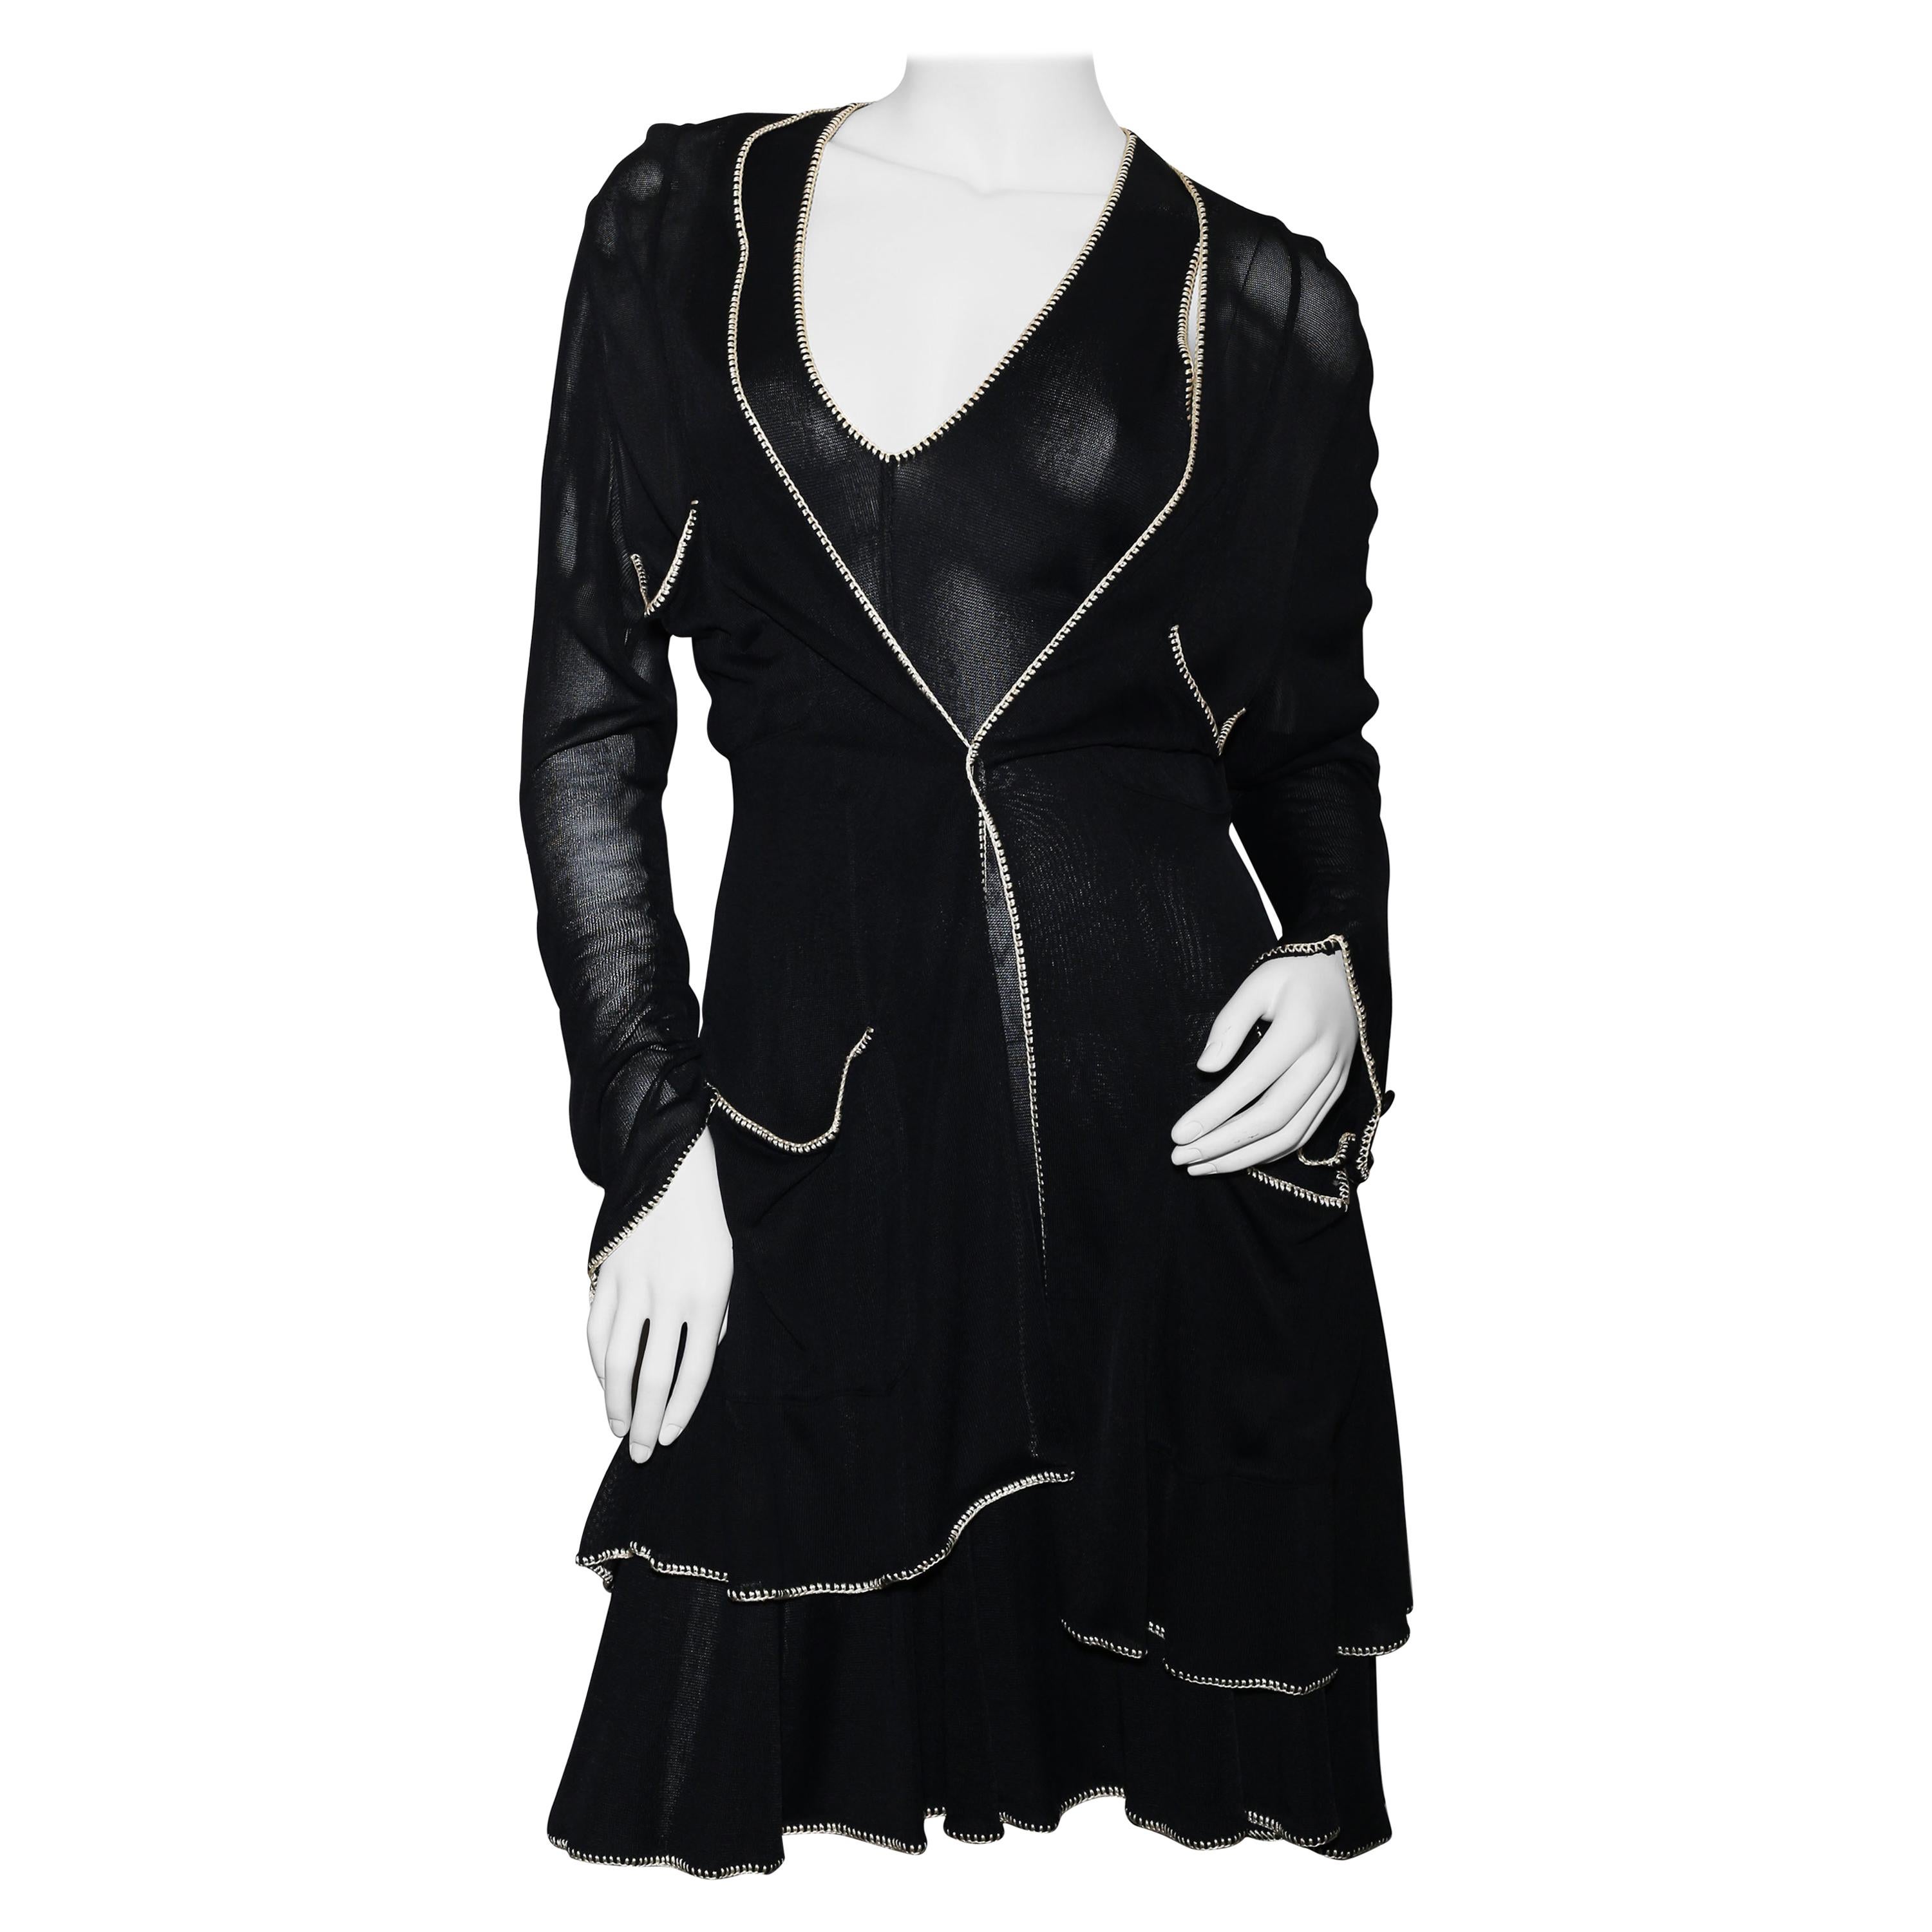 Das kleine schwarze Kleid von Chanel  Schwarz-Weiße Seide  Figur als Skulptur 